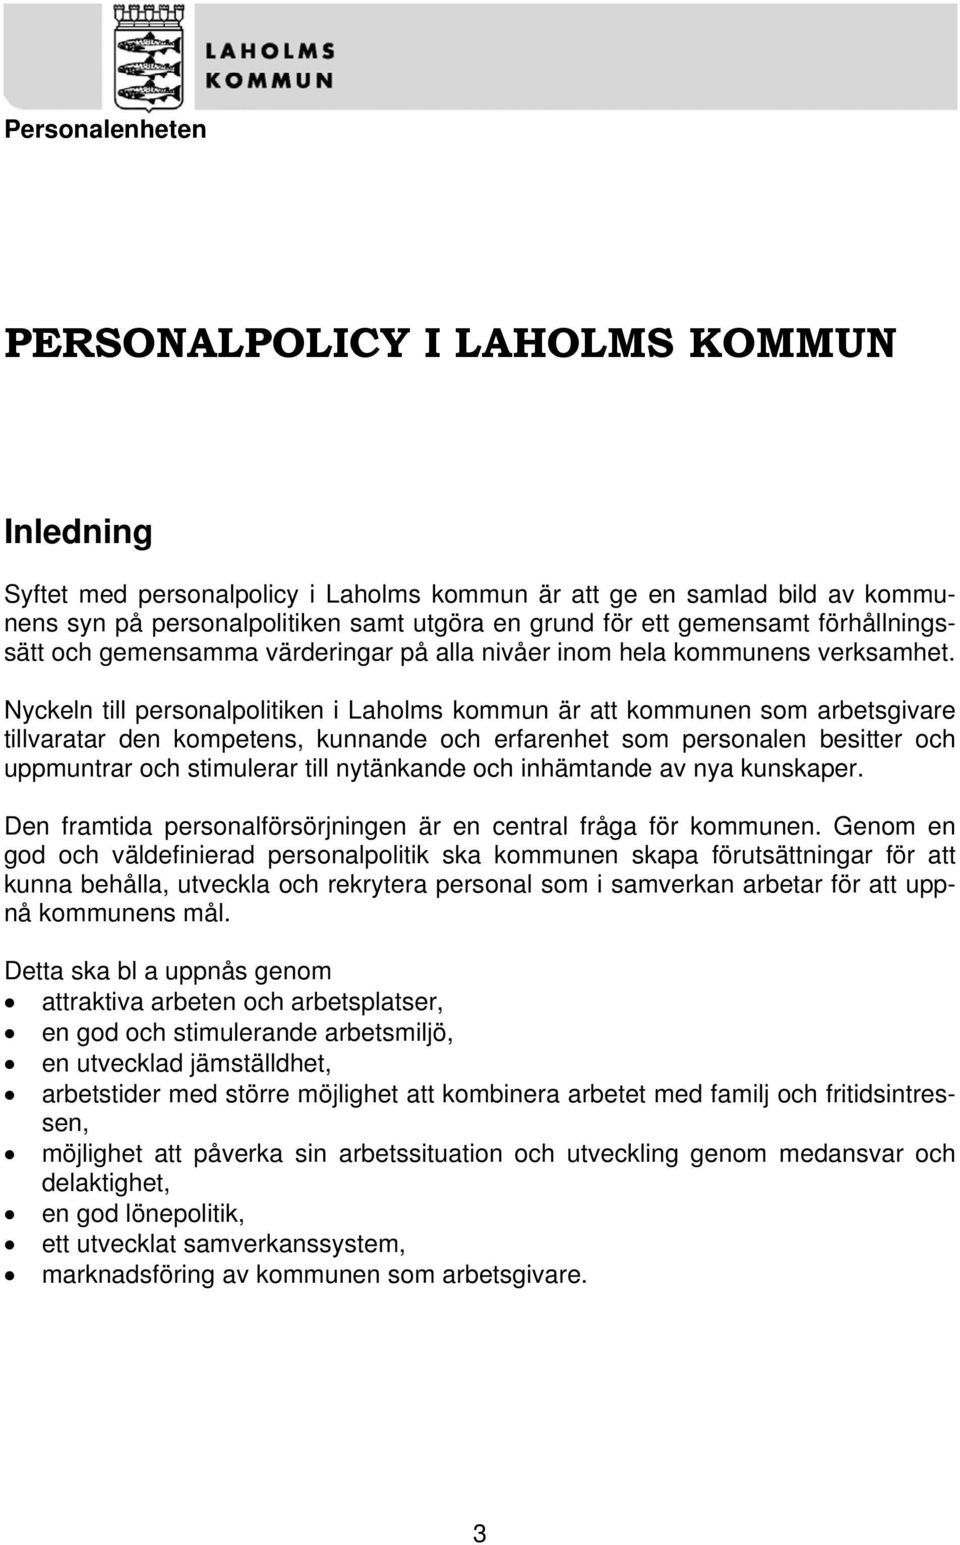 Nyckeln till personalpolitiken i Laholms kommun är att kommunen som arbetsgivare tillvaratar den kompetens, kunnande och erfarenhet som personalen besitter och uppmuntrar och stimulerar till